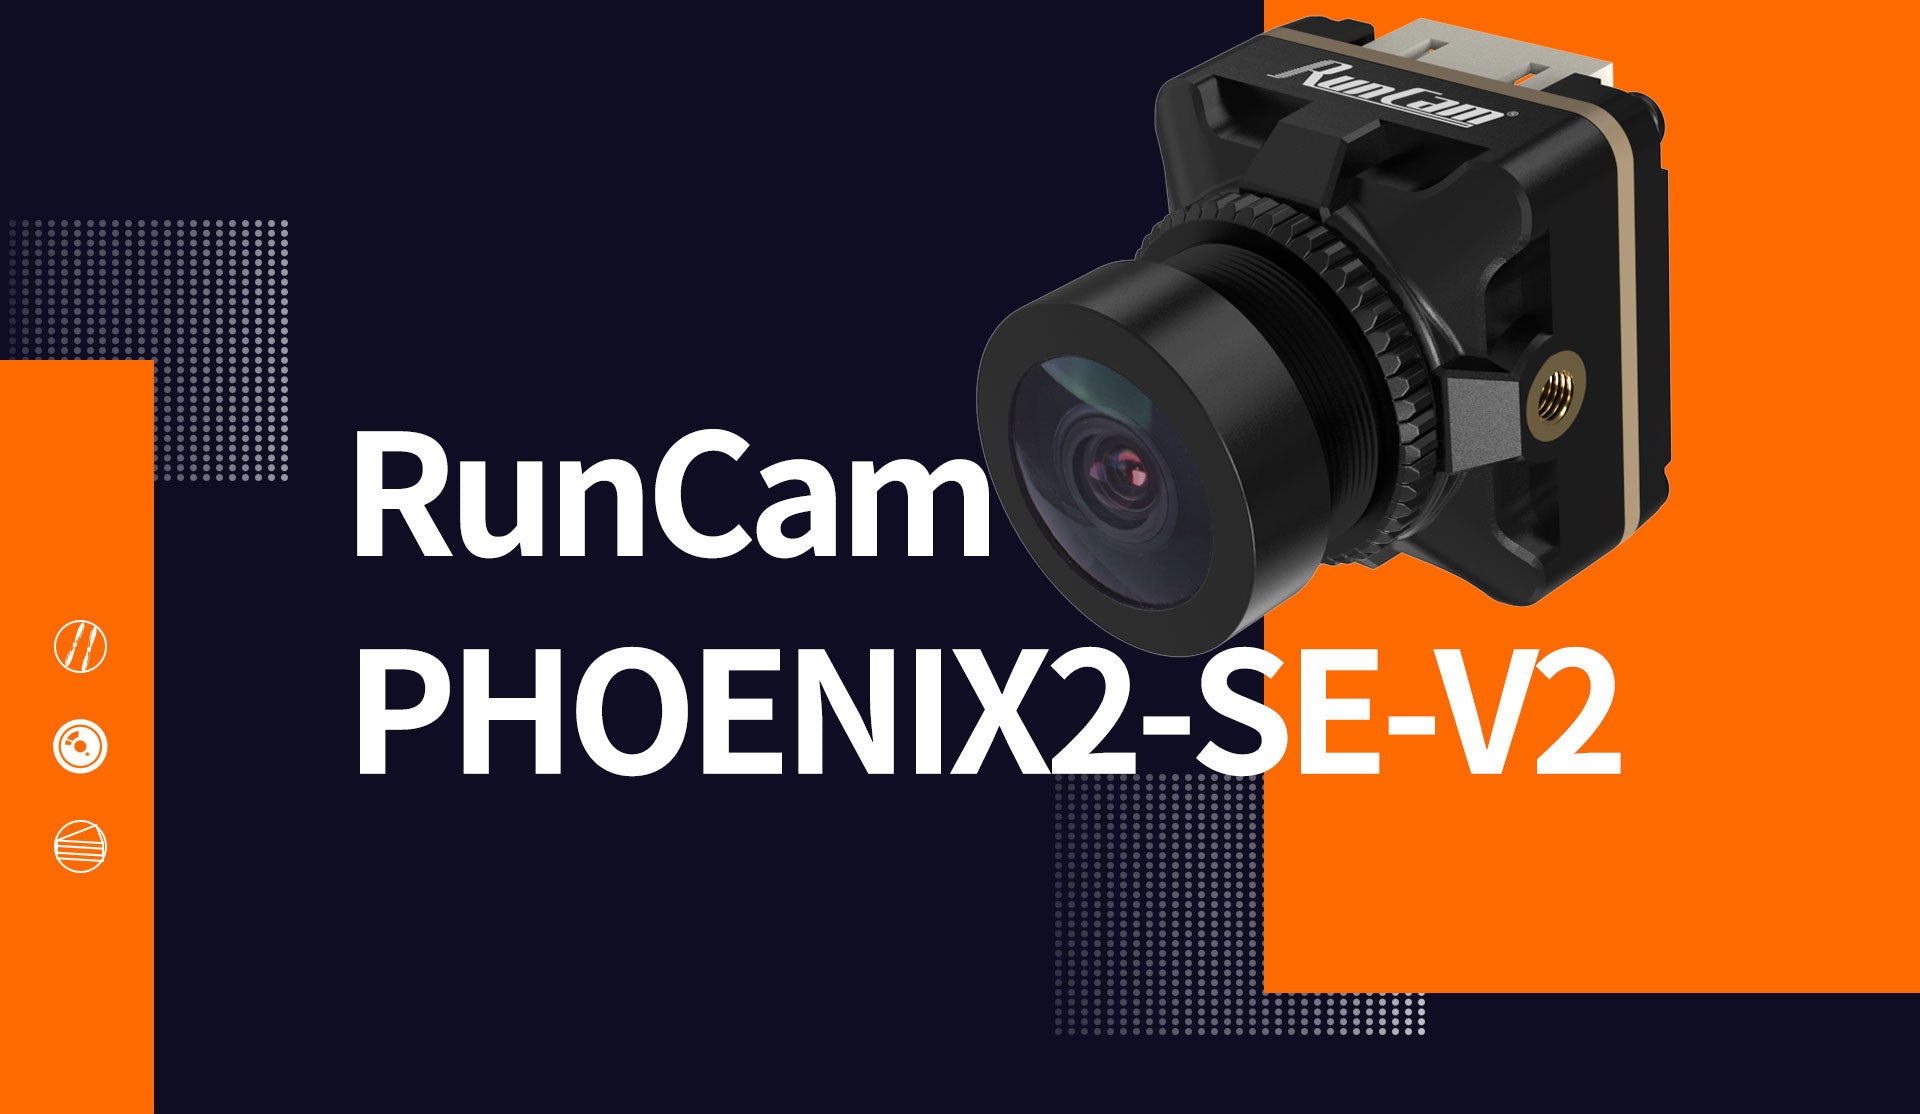 Runcam Phoenix 2 SE V2